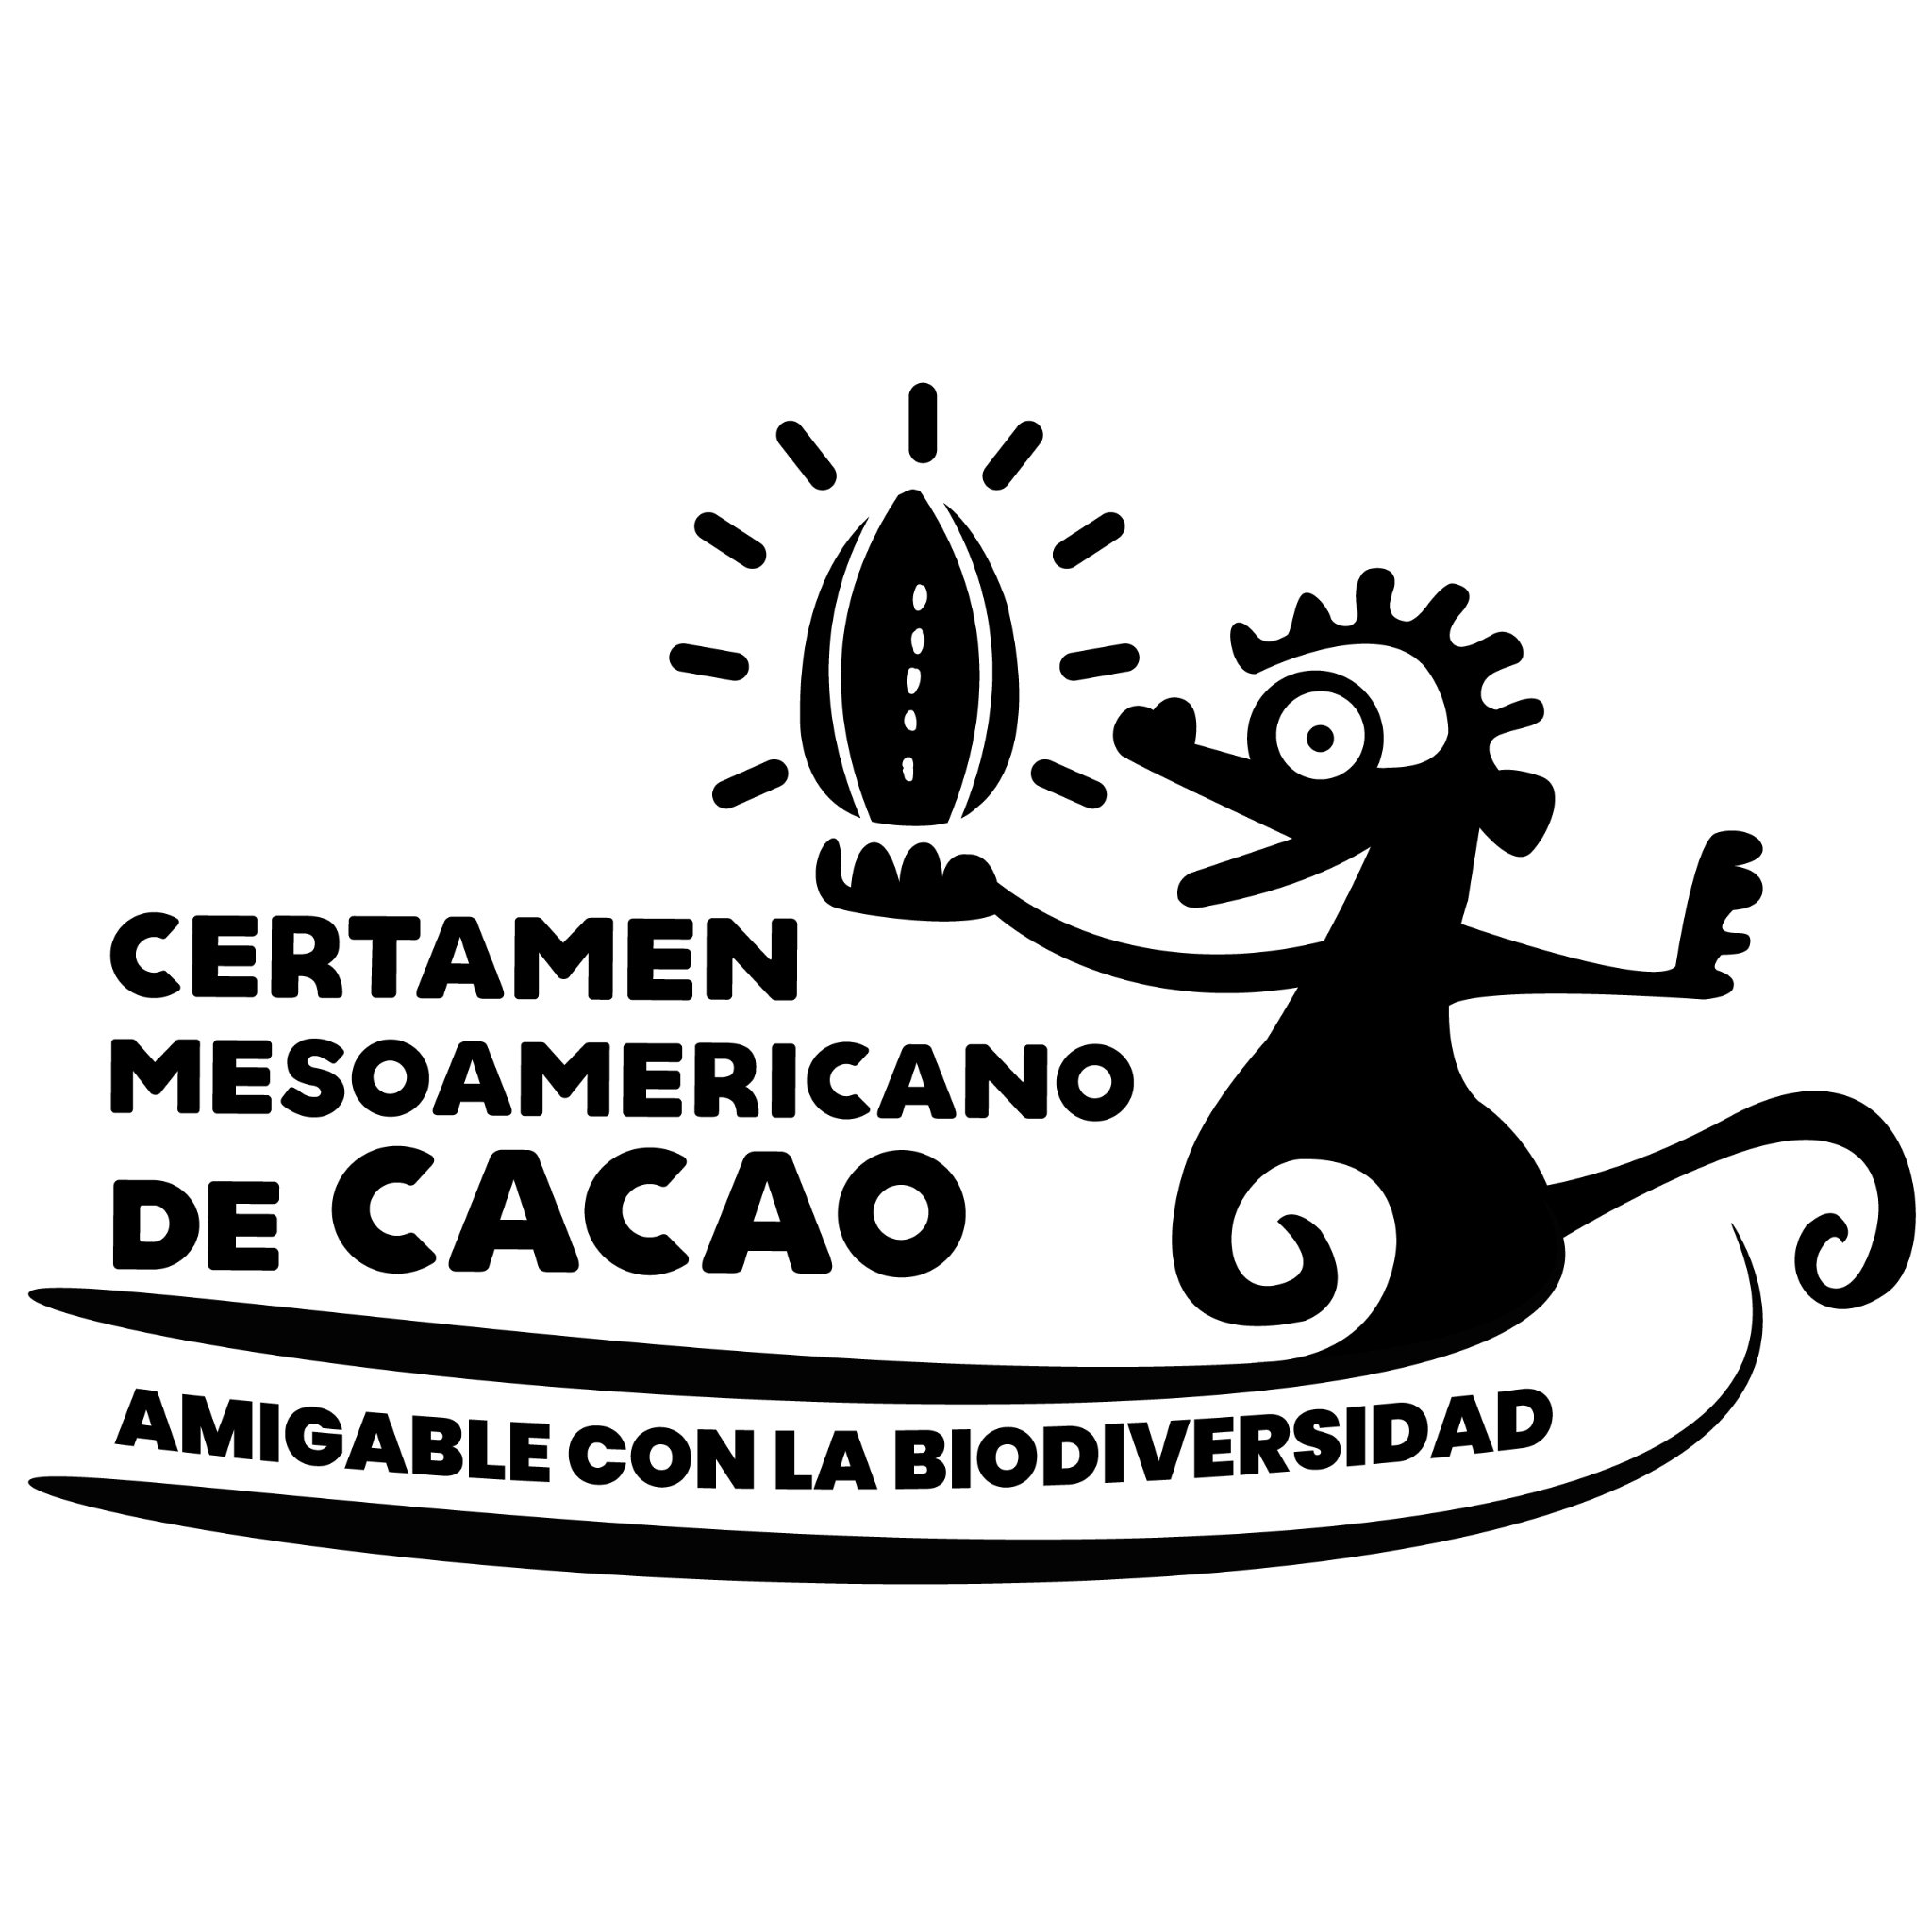 Certamen Mesoamericano de Cacao Amigable con la Biodiversidad